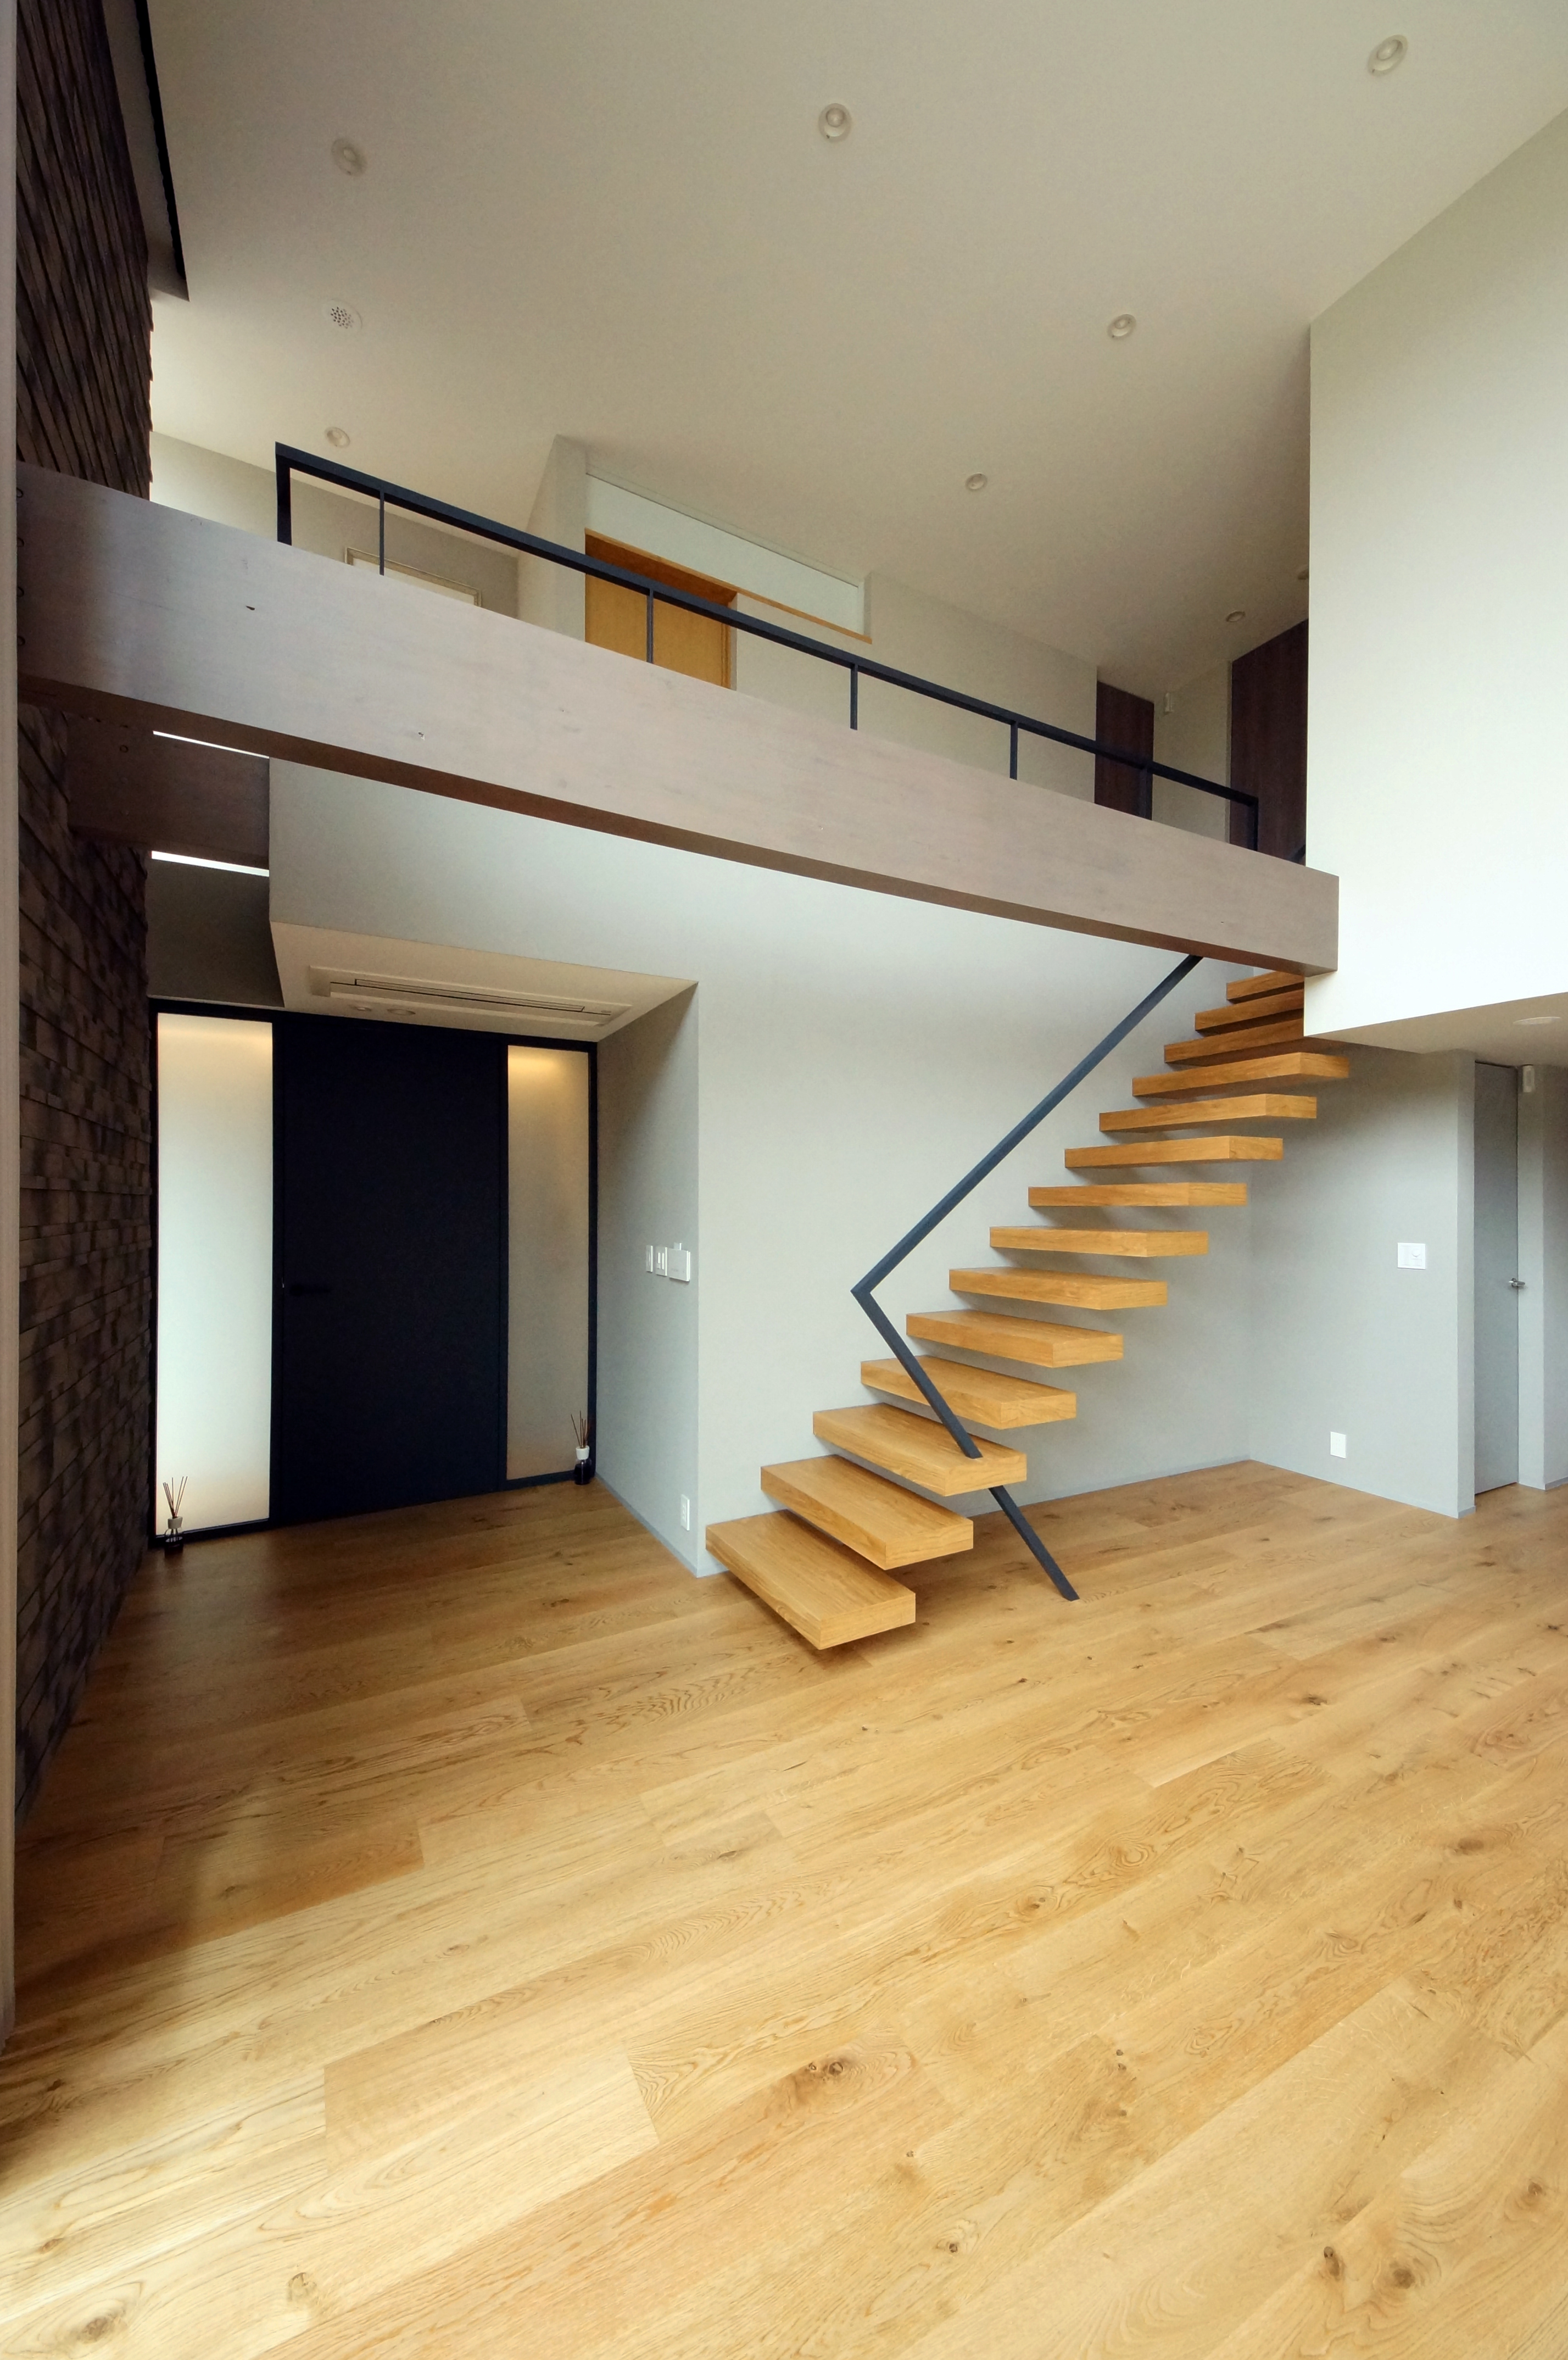 シンプルな形状のモダンな階段